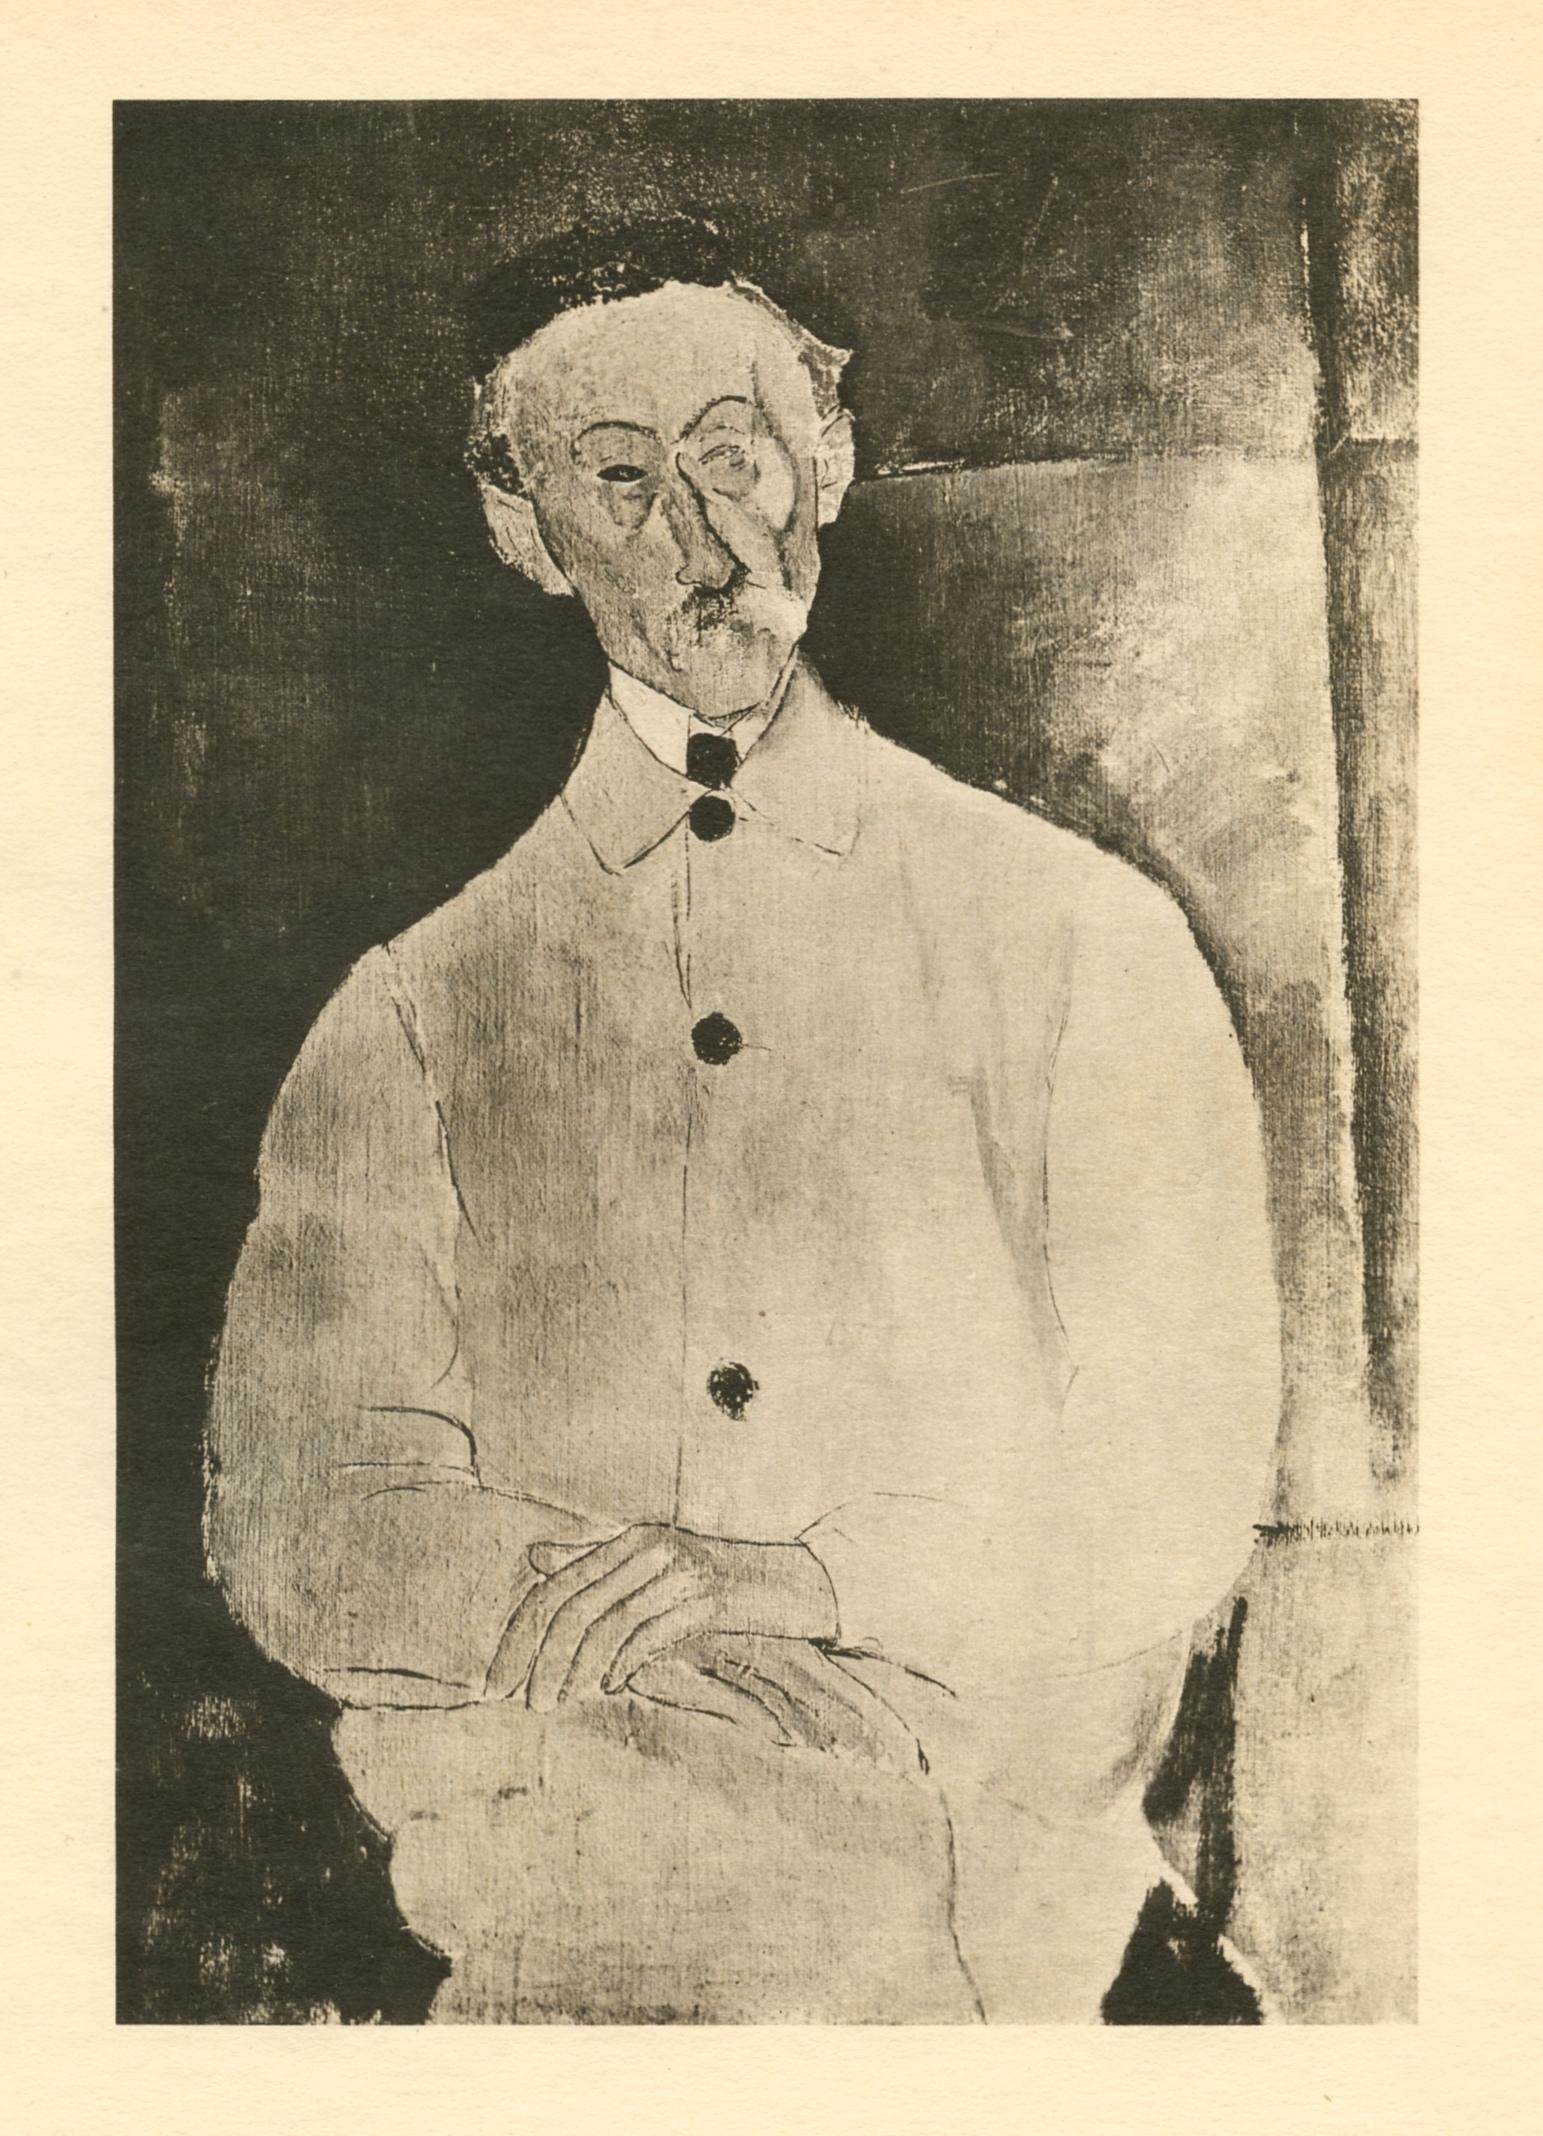 Medium: Lichtdruck (nach dem Gemälde). Gedruckt 1926 im Atelier von Leon Marotte und veröffentlicht in einer Auflage von 1000 Exemplaren bei Editions des Quatre Chemins. Bildgröße: 8 x 5 1/2 Zoll (203 x 138 mm). Blattgröße: 11 x 8 1/4 Zoll (280 x